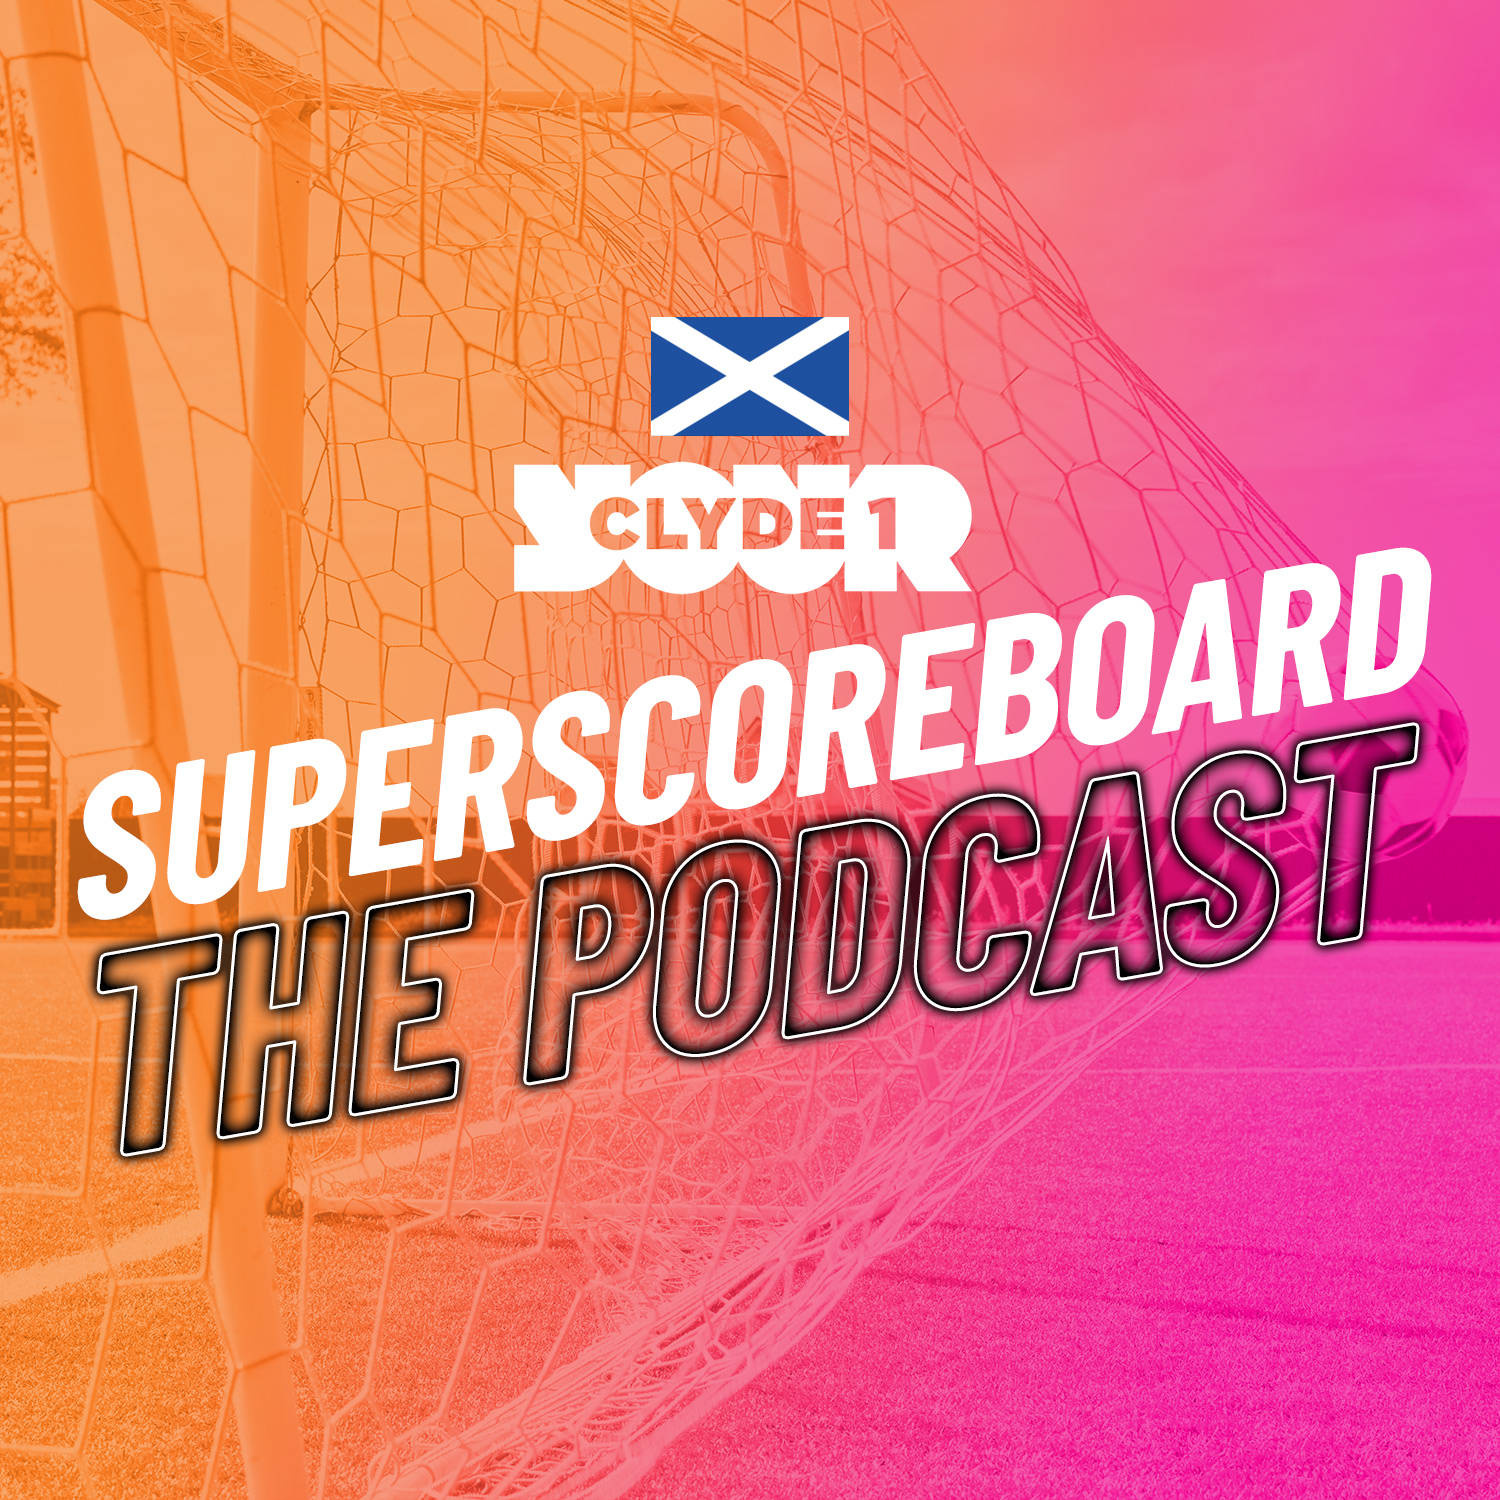 Thursday 21st December Clyde 1 Superscoreboard